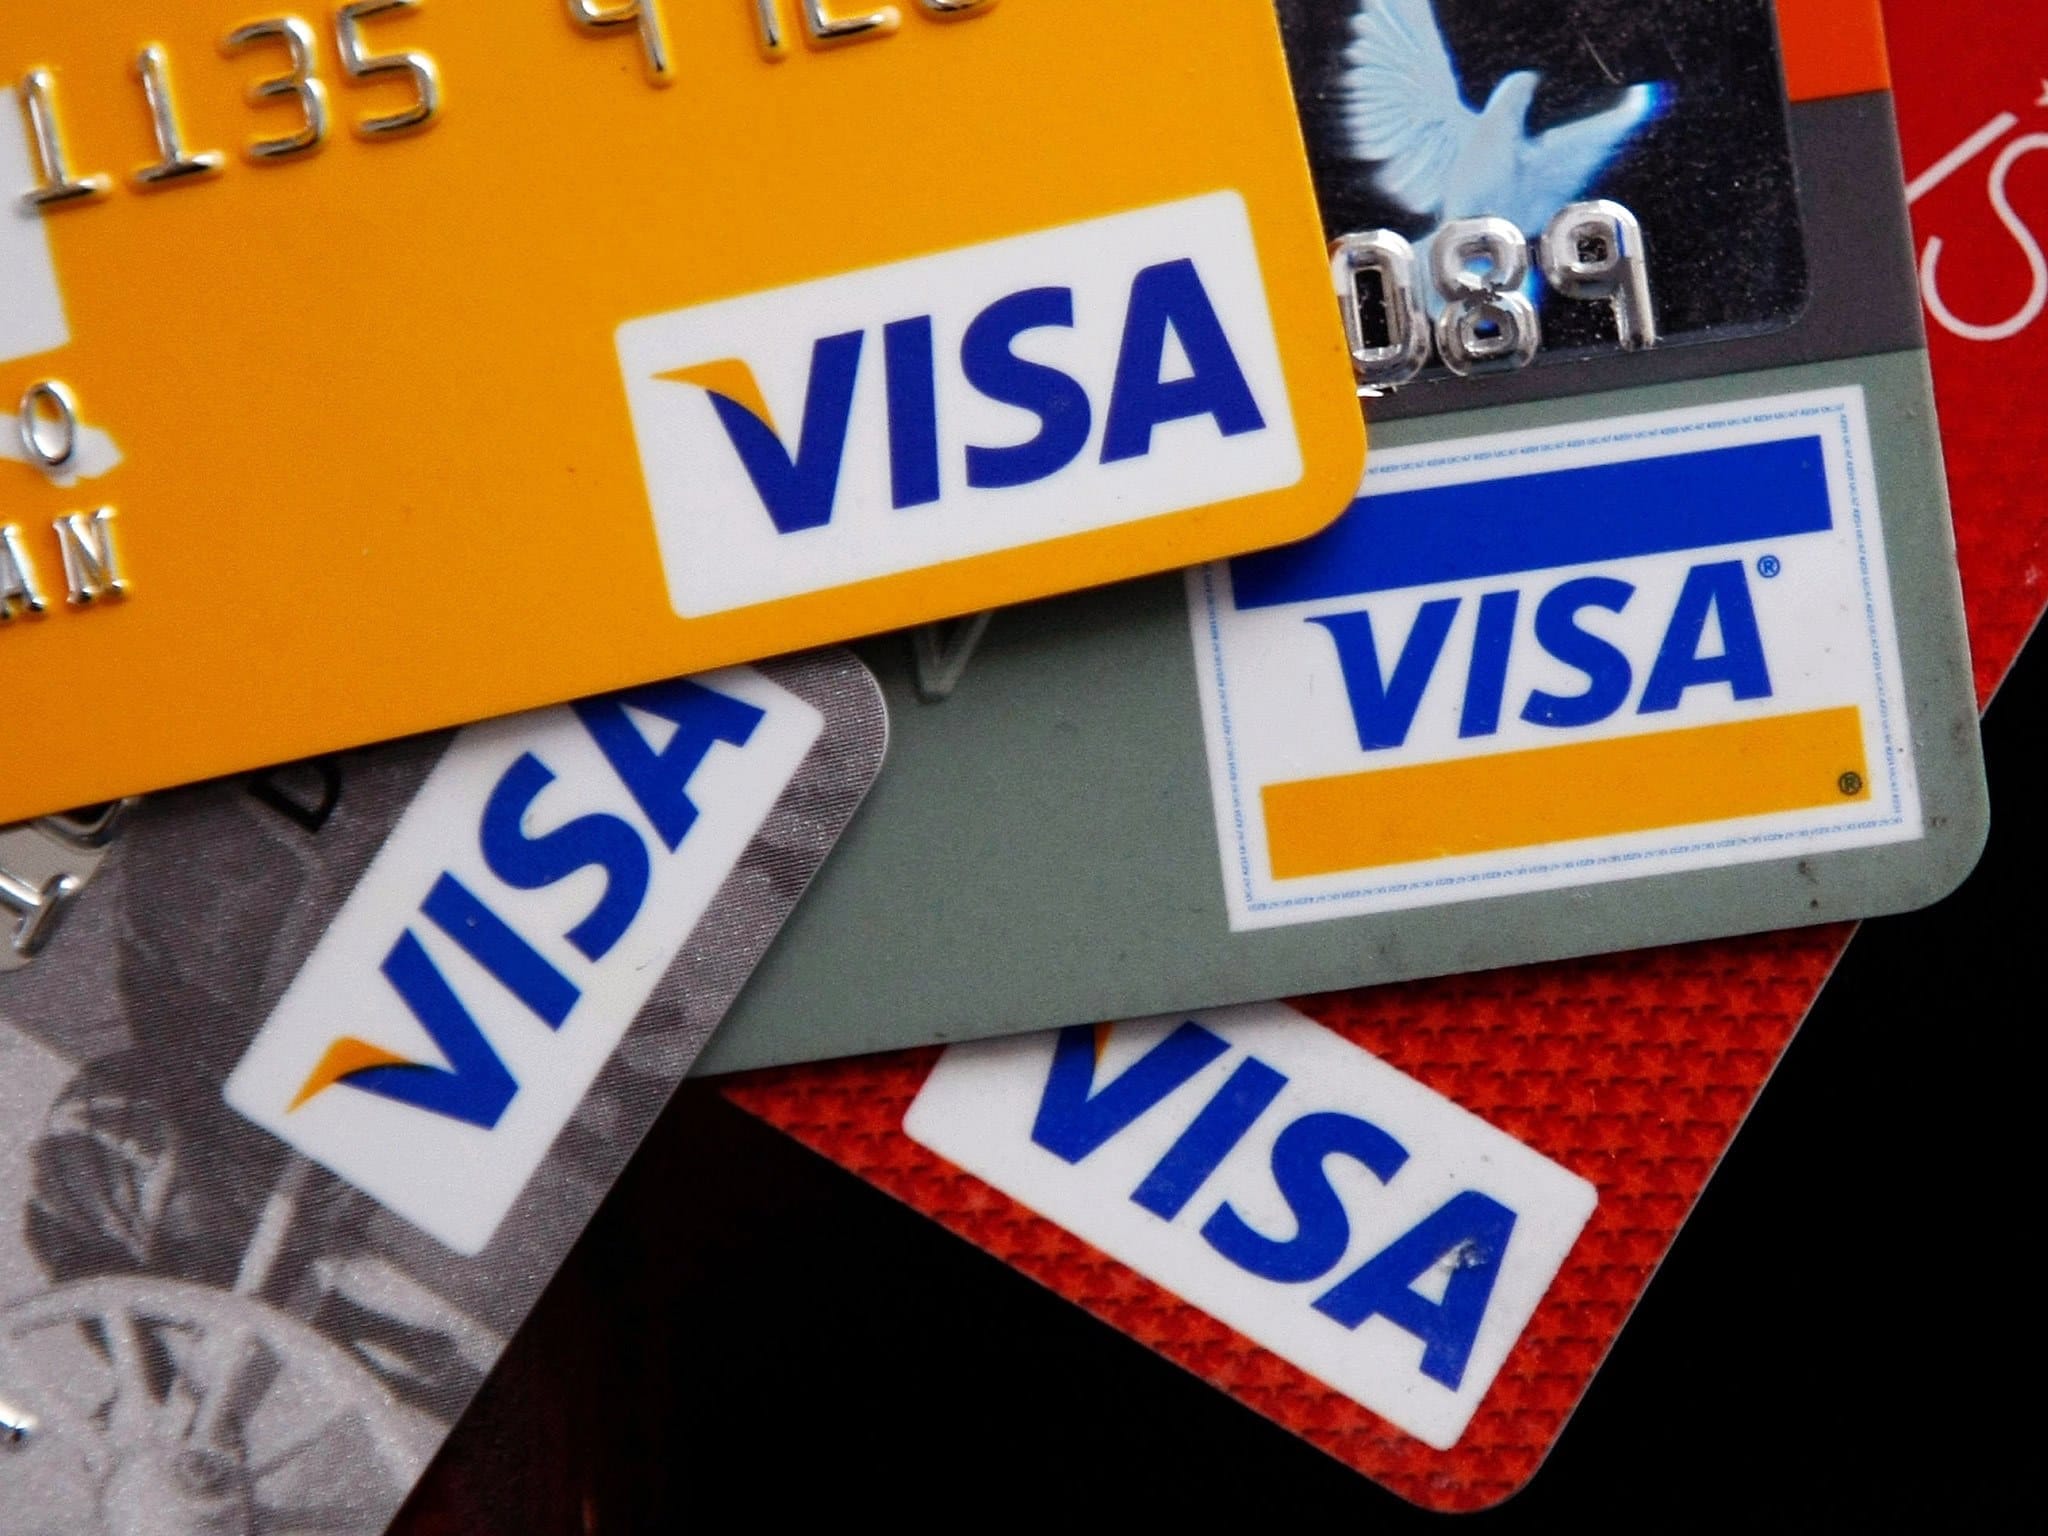 الأوراق المطلوبة لعمل فيزا وأنواع البطاقات الائتمانية البنك الأهلي